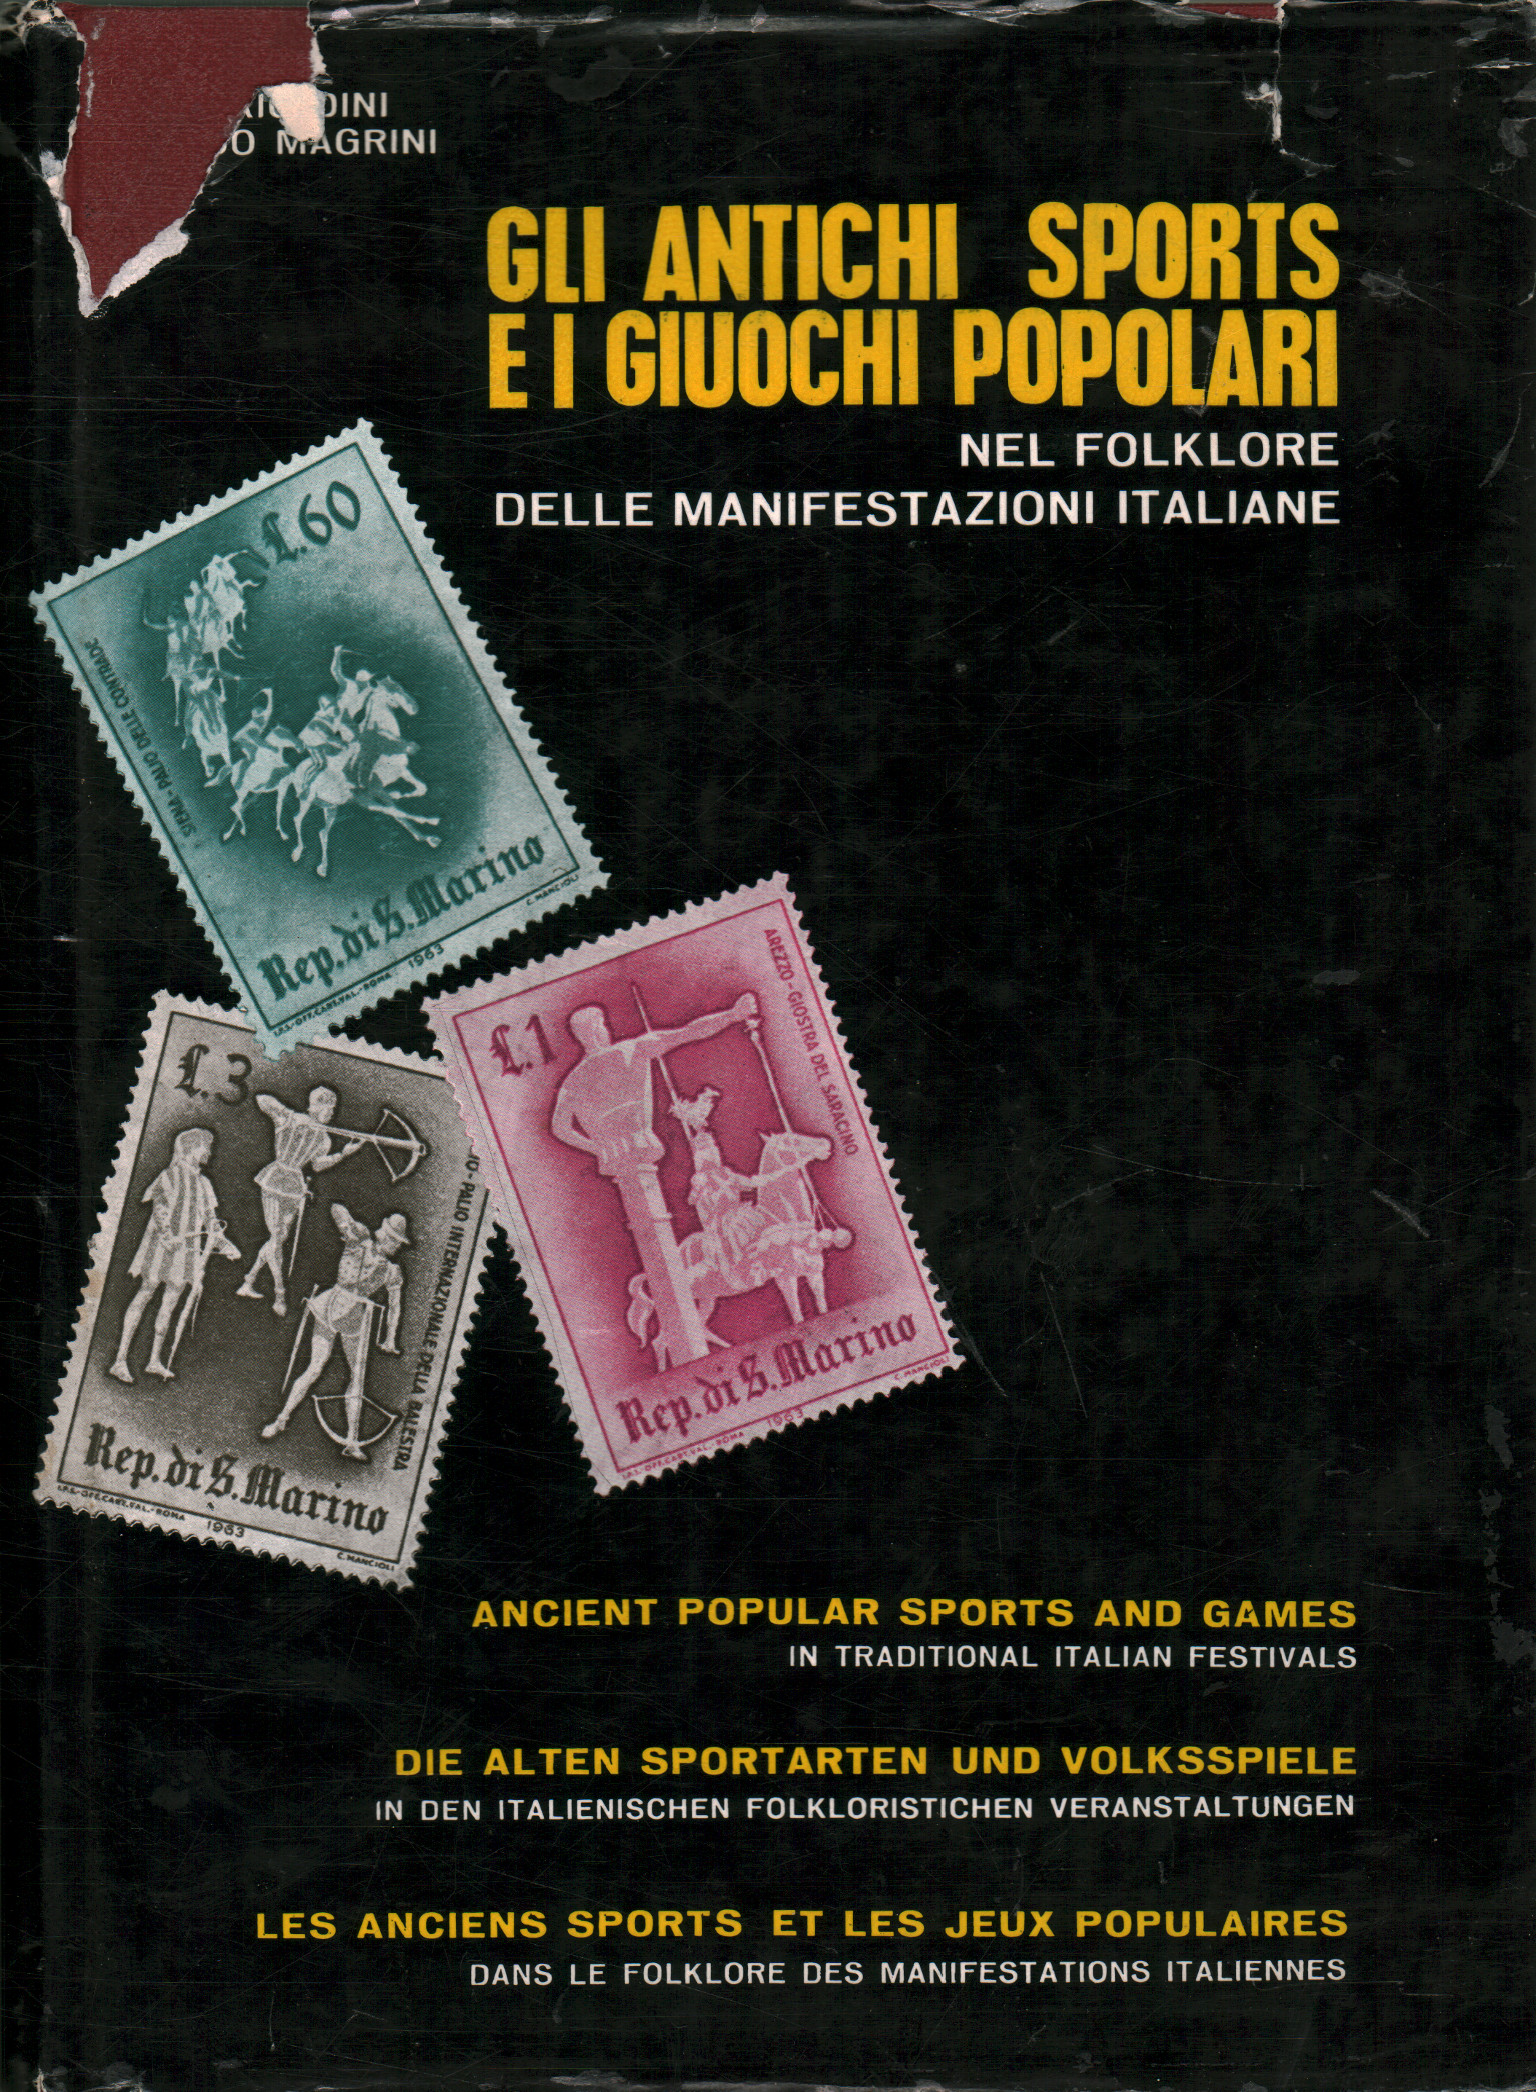 Sports anciens et jeux populaires dans le folklore, Vittorio Dini Florido Magrini